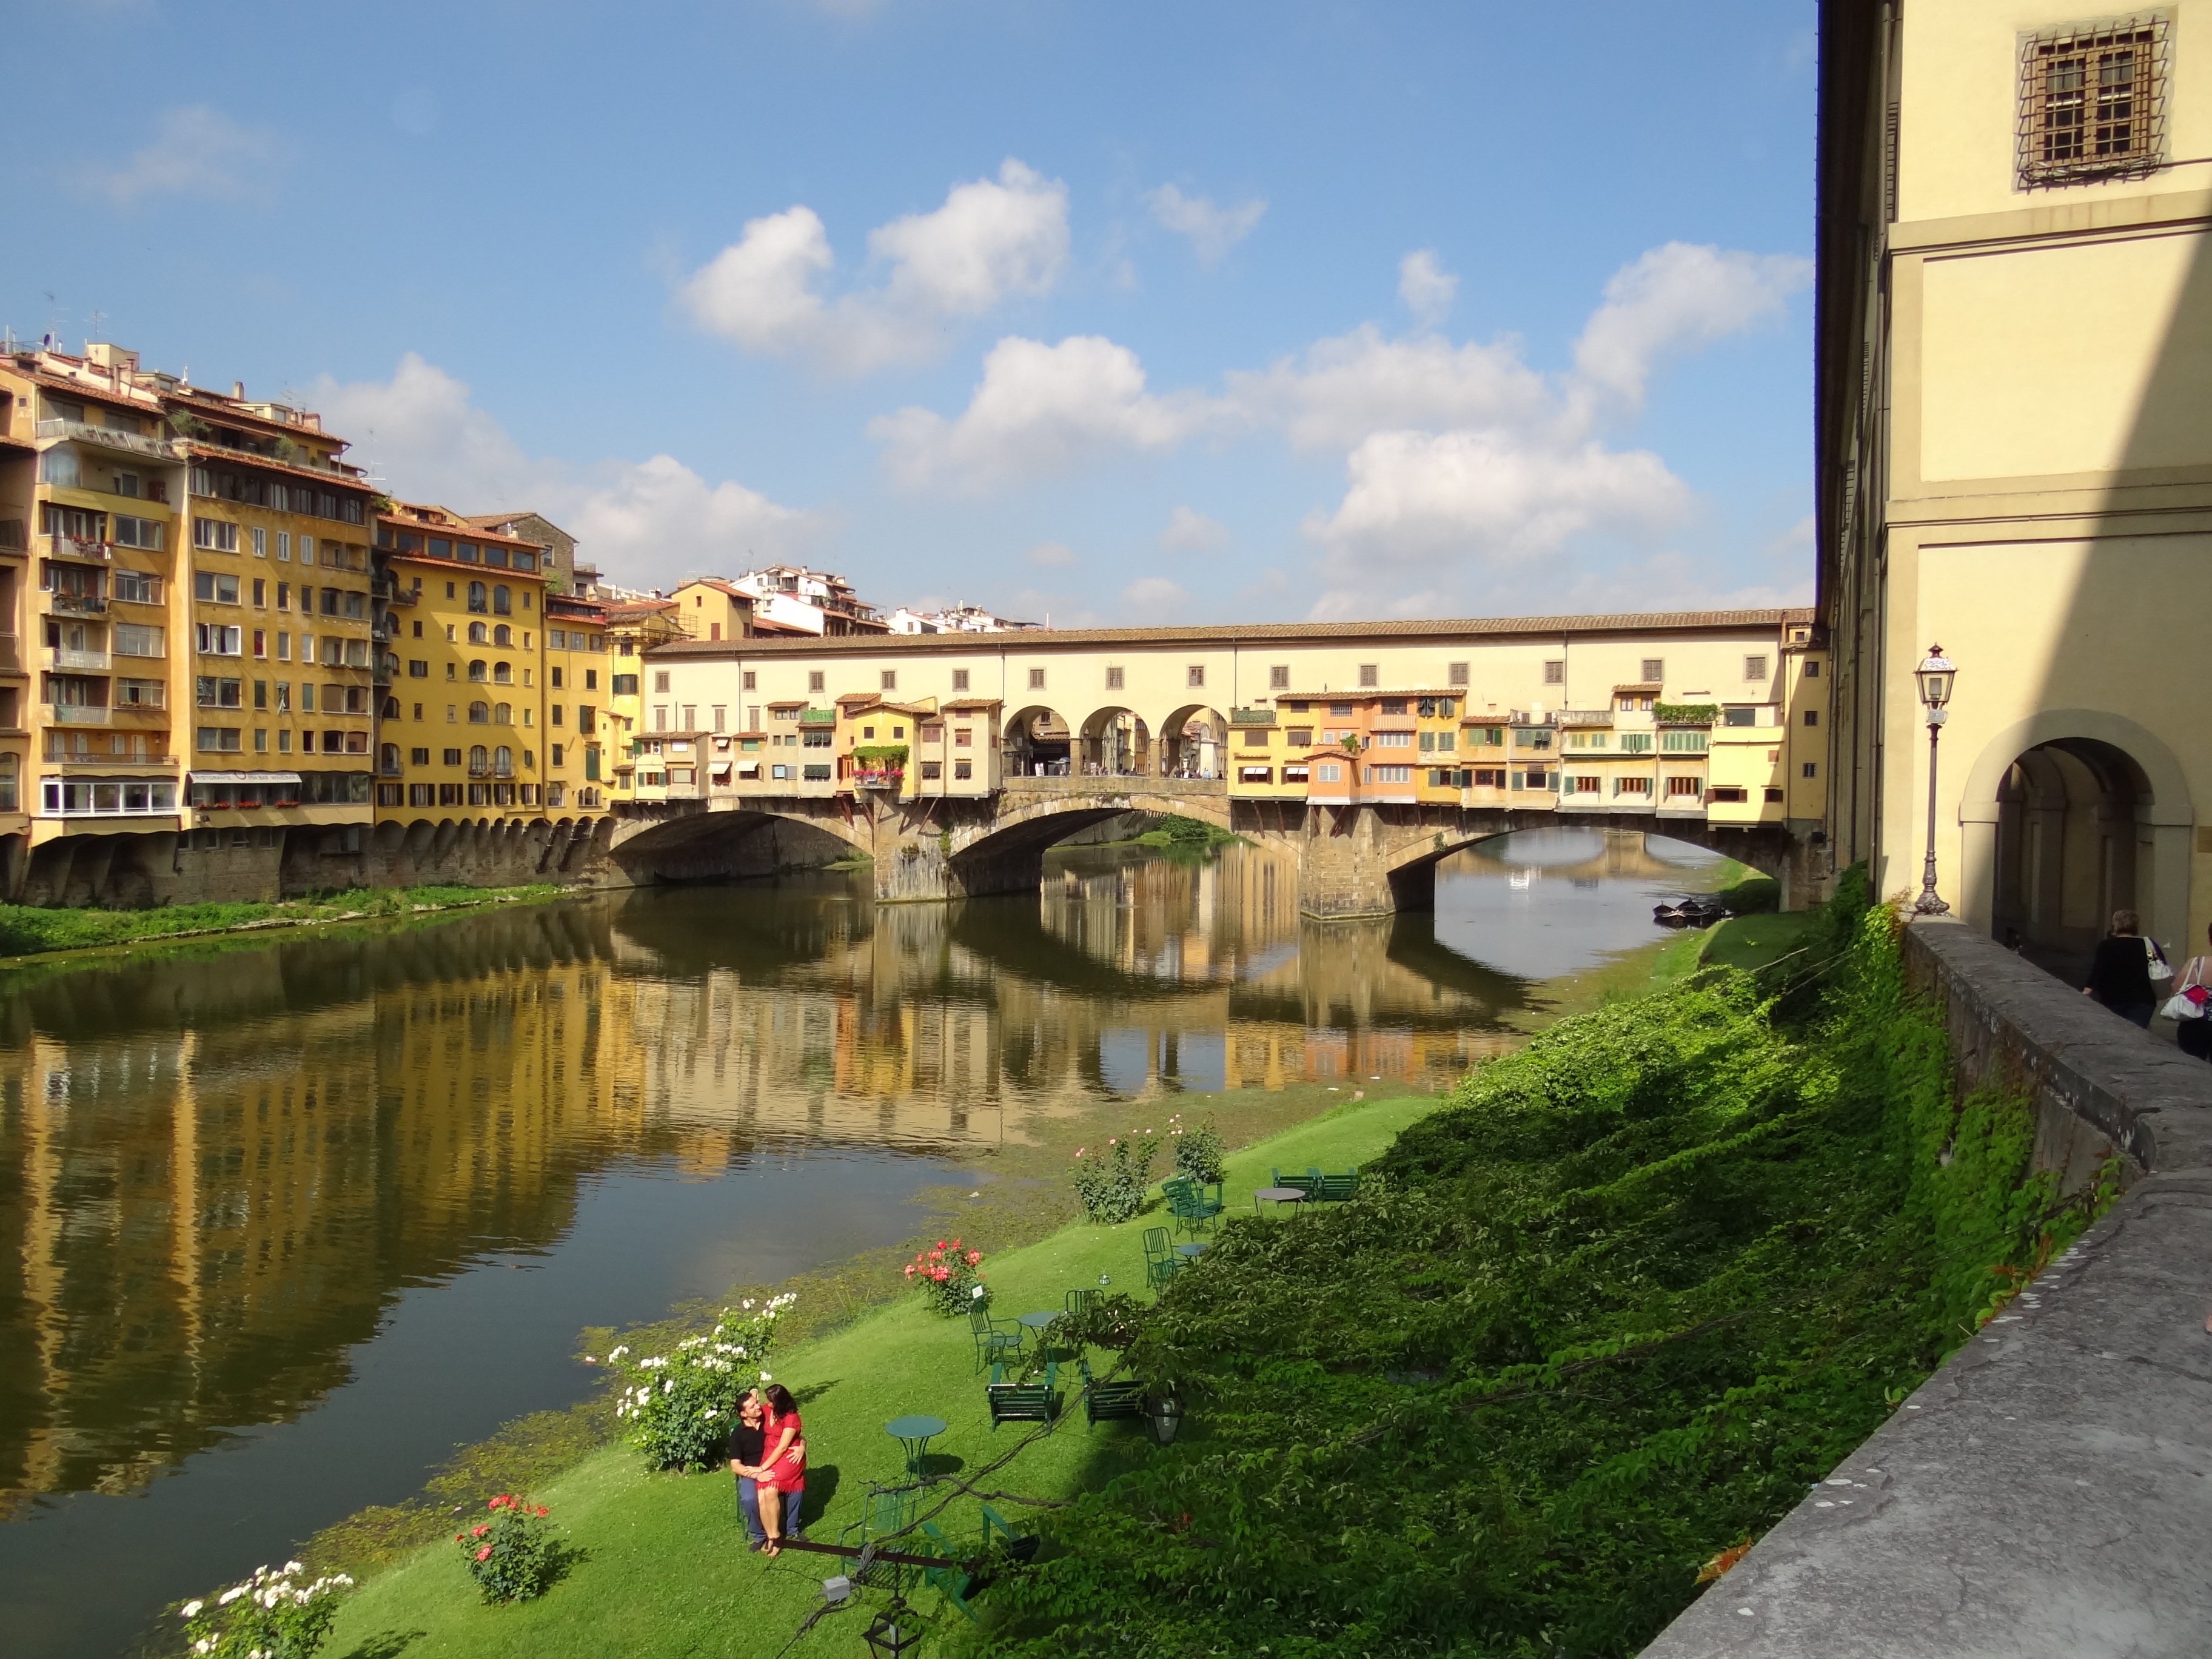 Ponte Vecchio on the River Arno